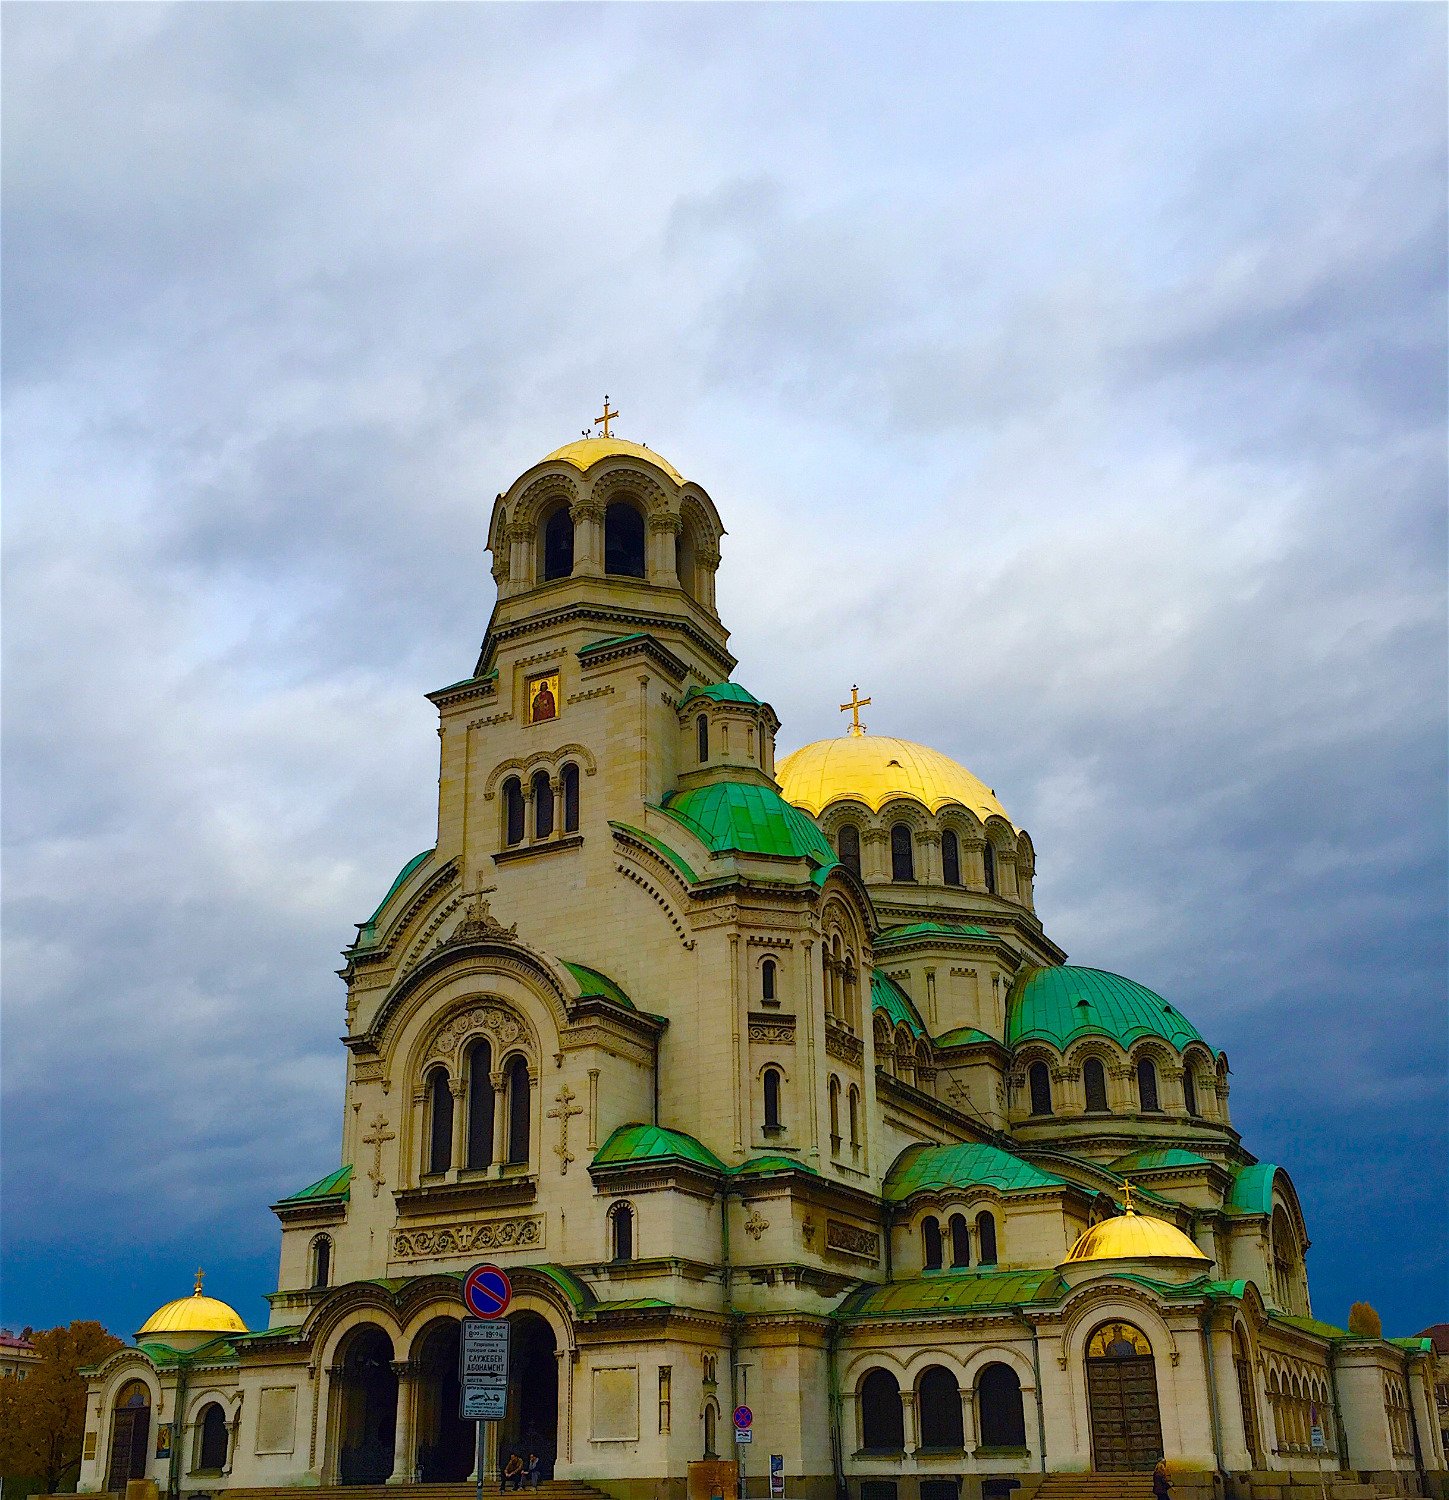 Храм-памятник Святого Александра Невского